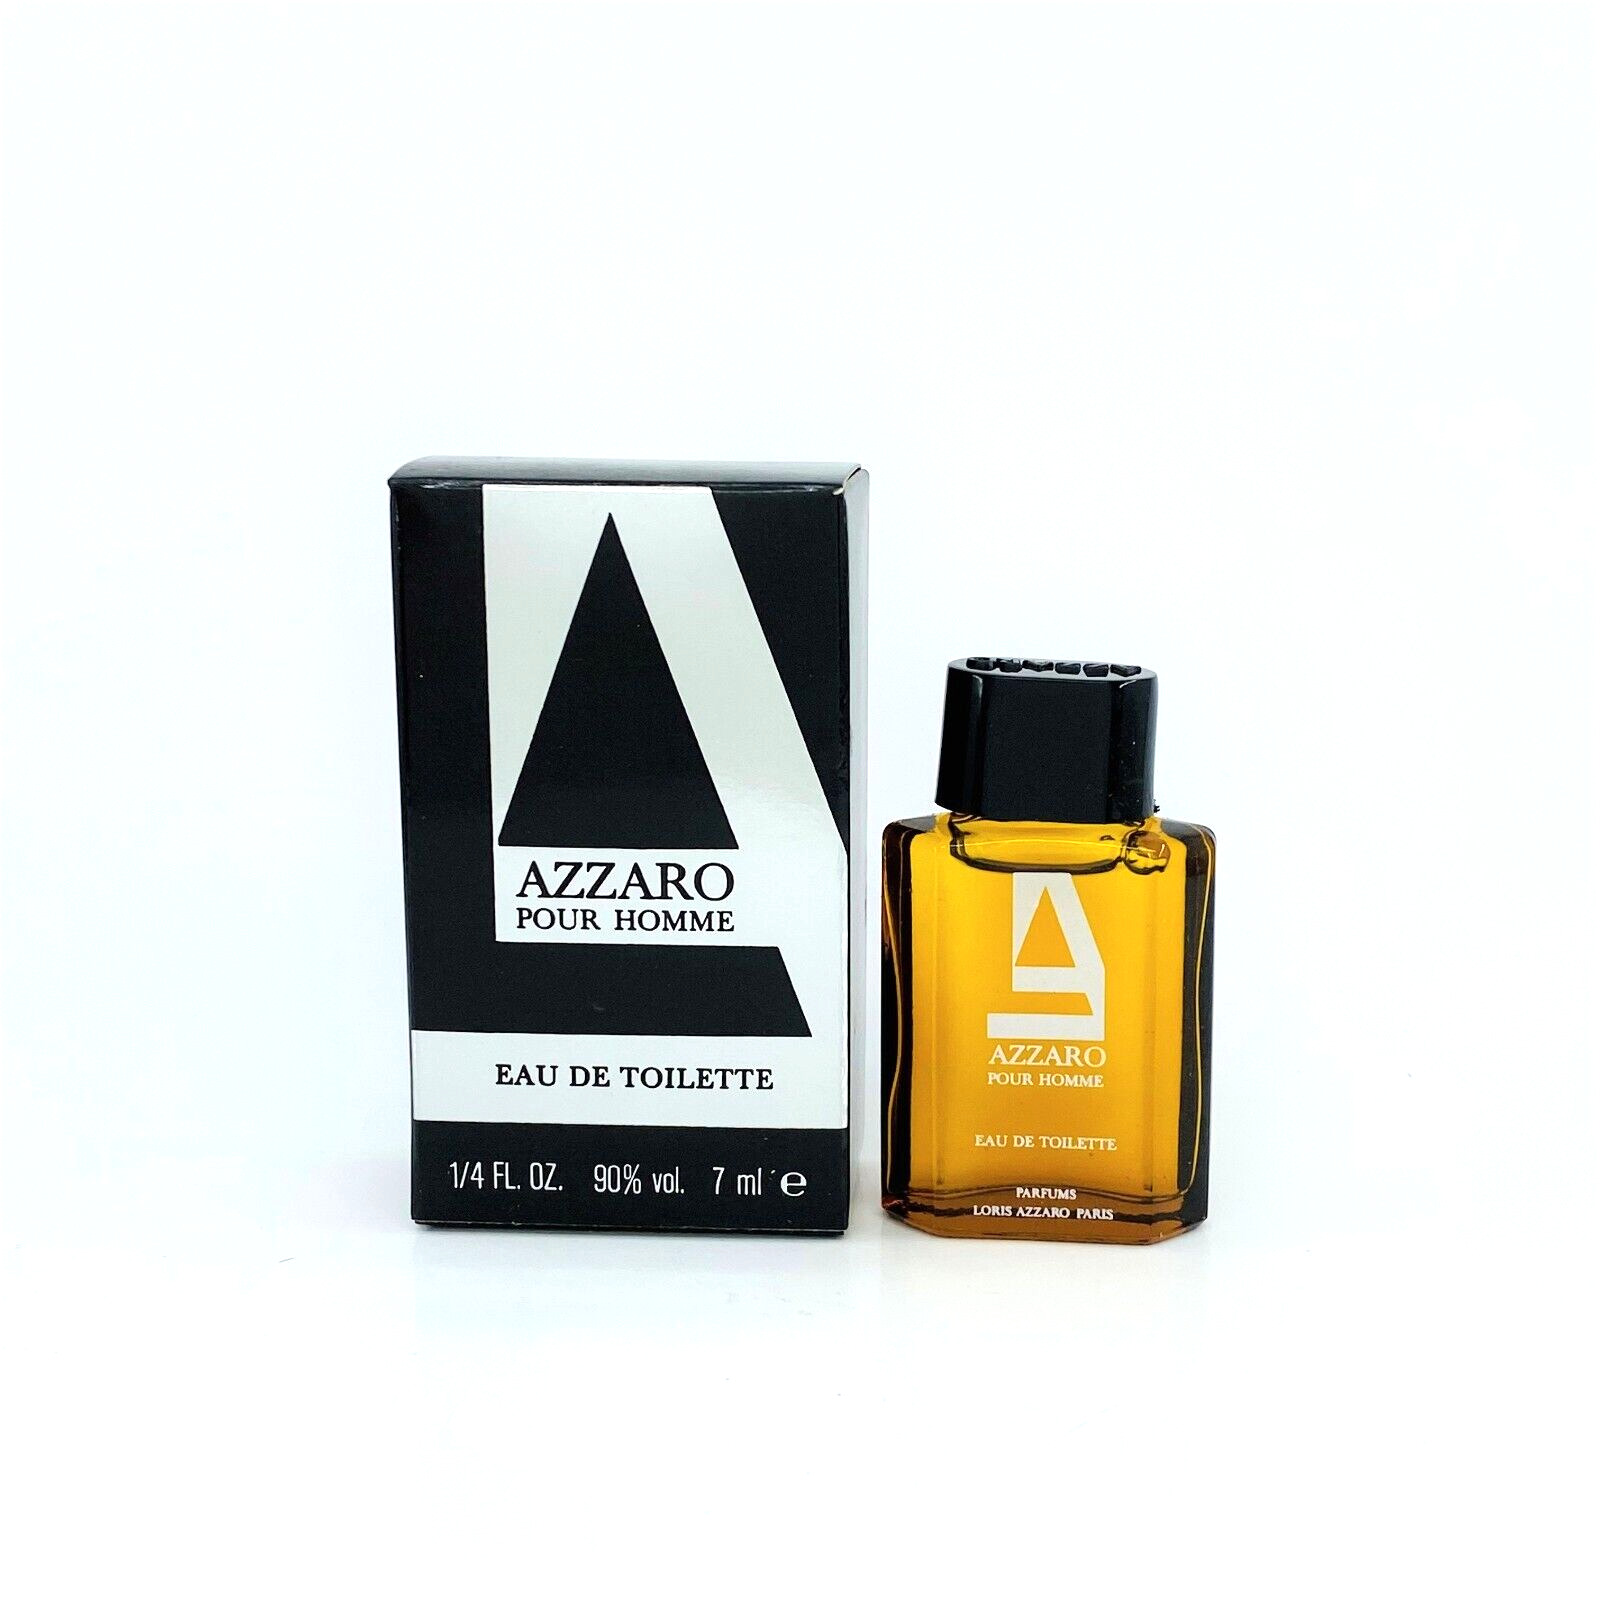 AZZARO FOR MEN Eau de toilette vintage 1/4 fl.oz. 7 ml. miniperfume new